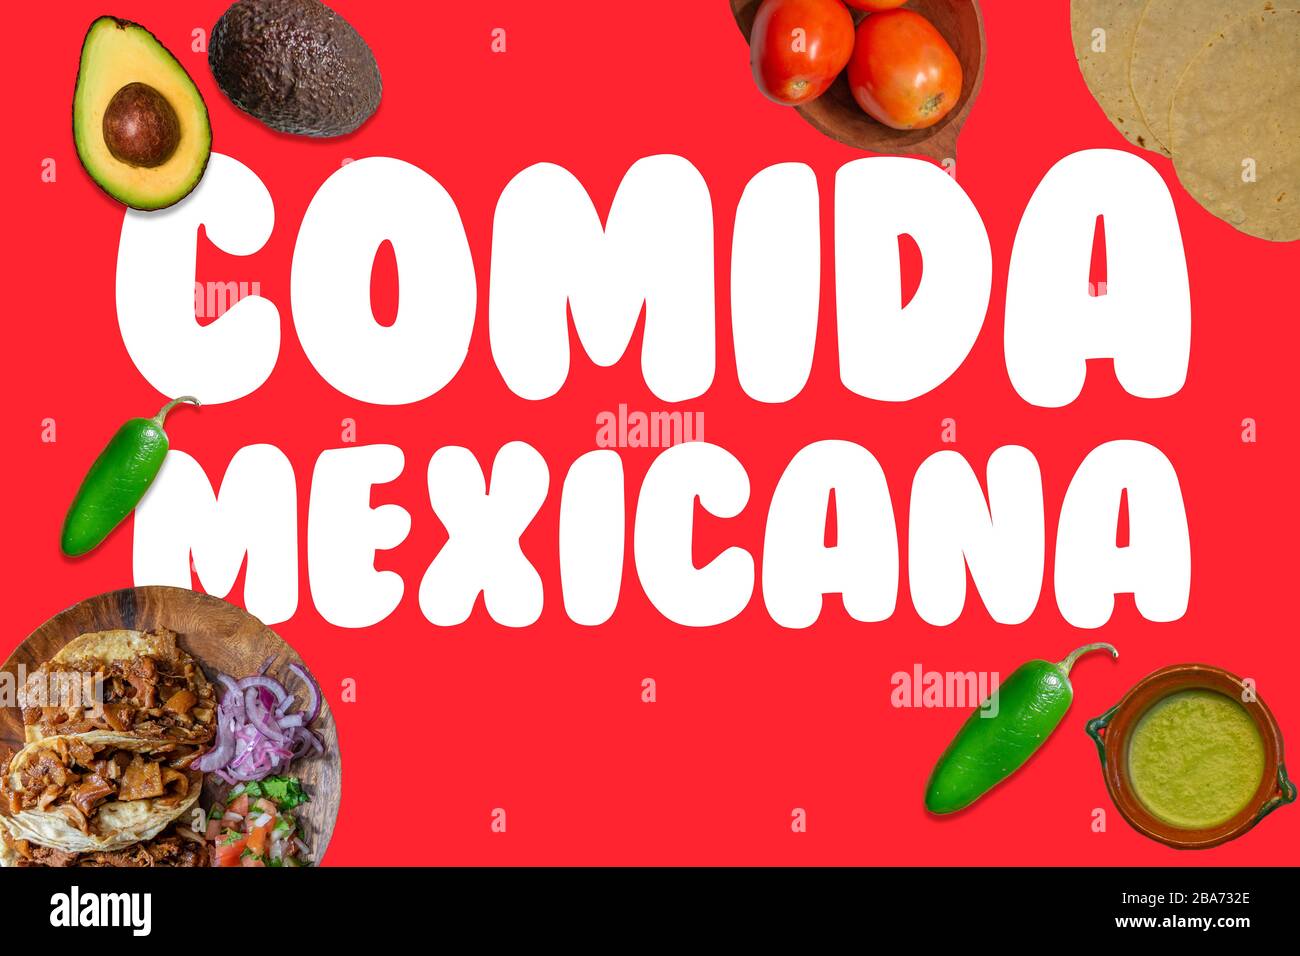 Foto dall'alto del cibo messicano come tacos di ingredienti come avocado e peperoncino con la frase COMIDA MEXICANA in spagnolo Foto Stock